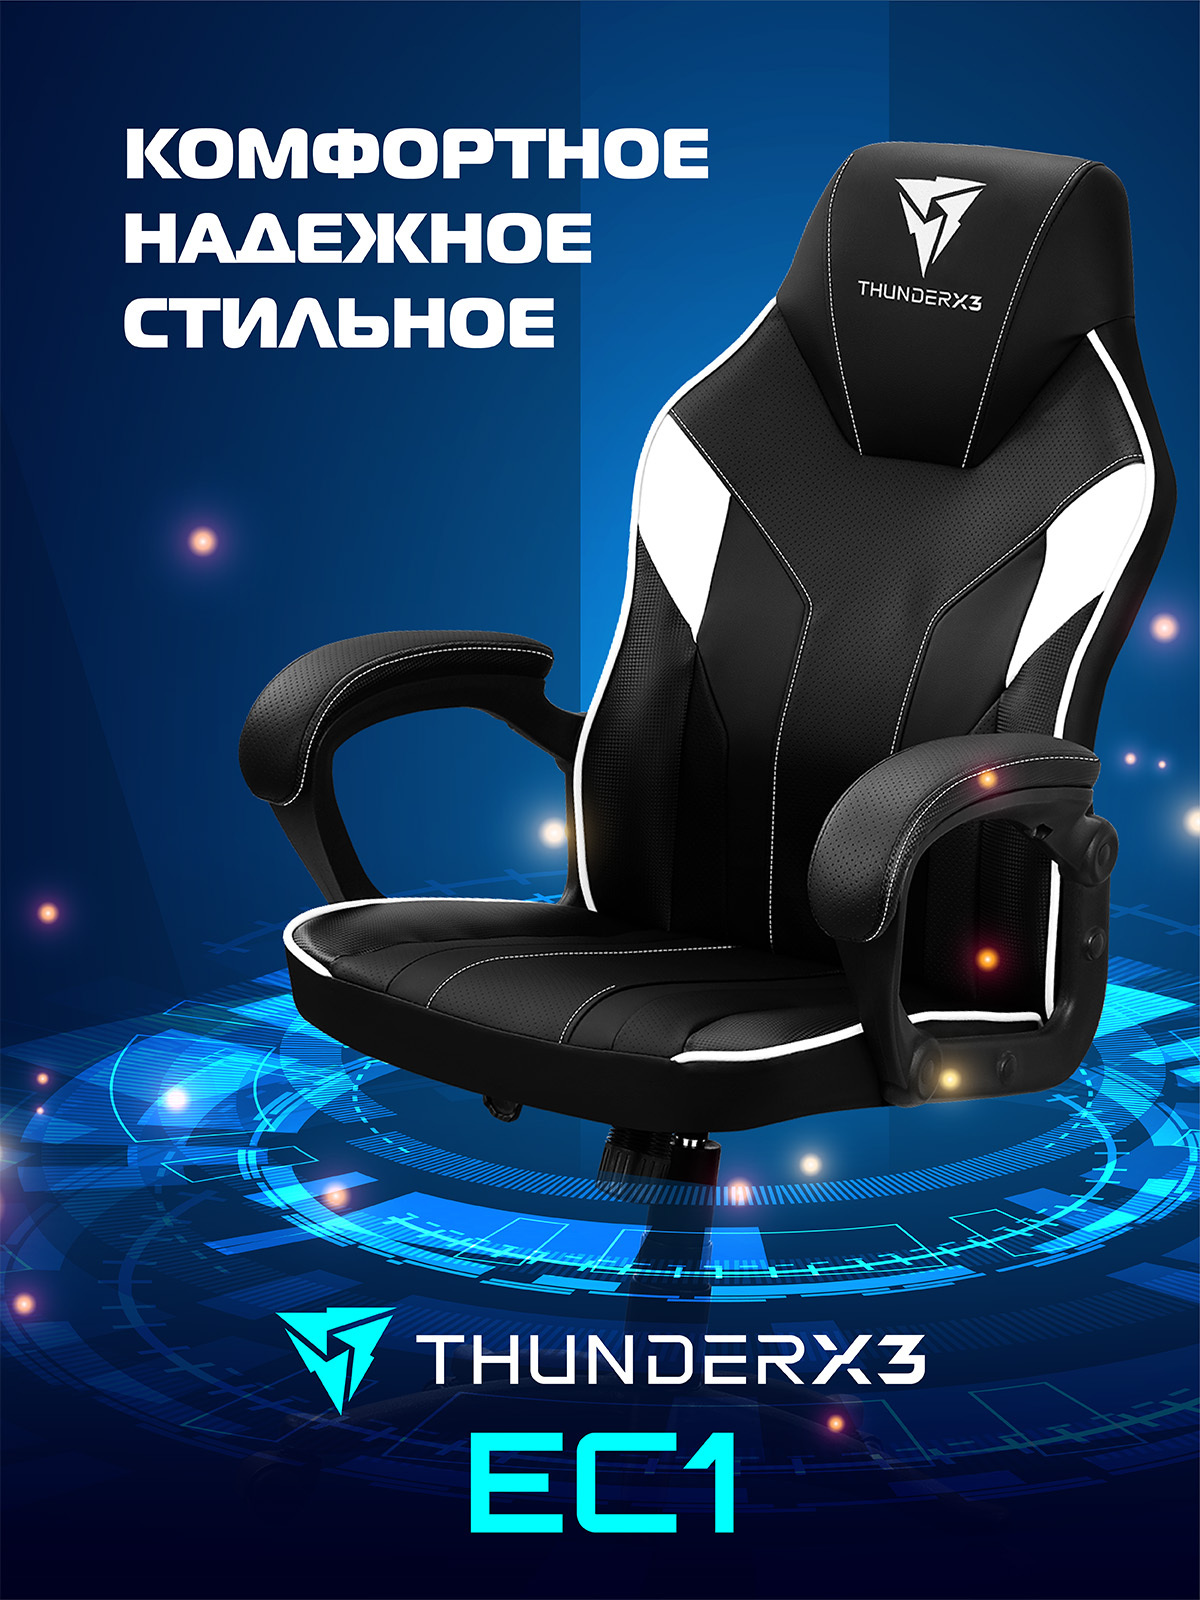 кресло игровое thunderx3 tc5 обзор